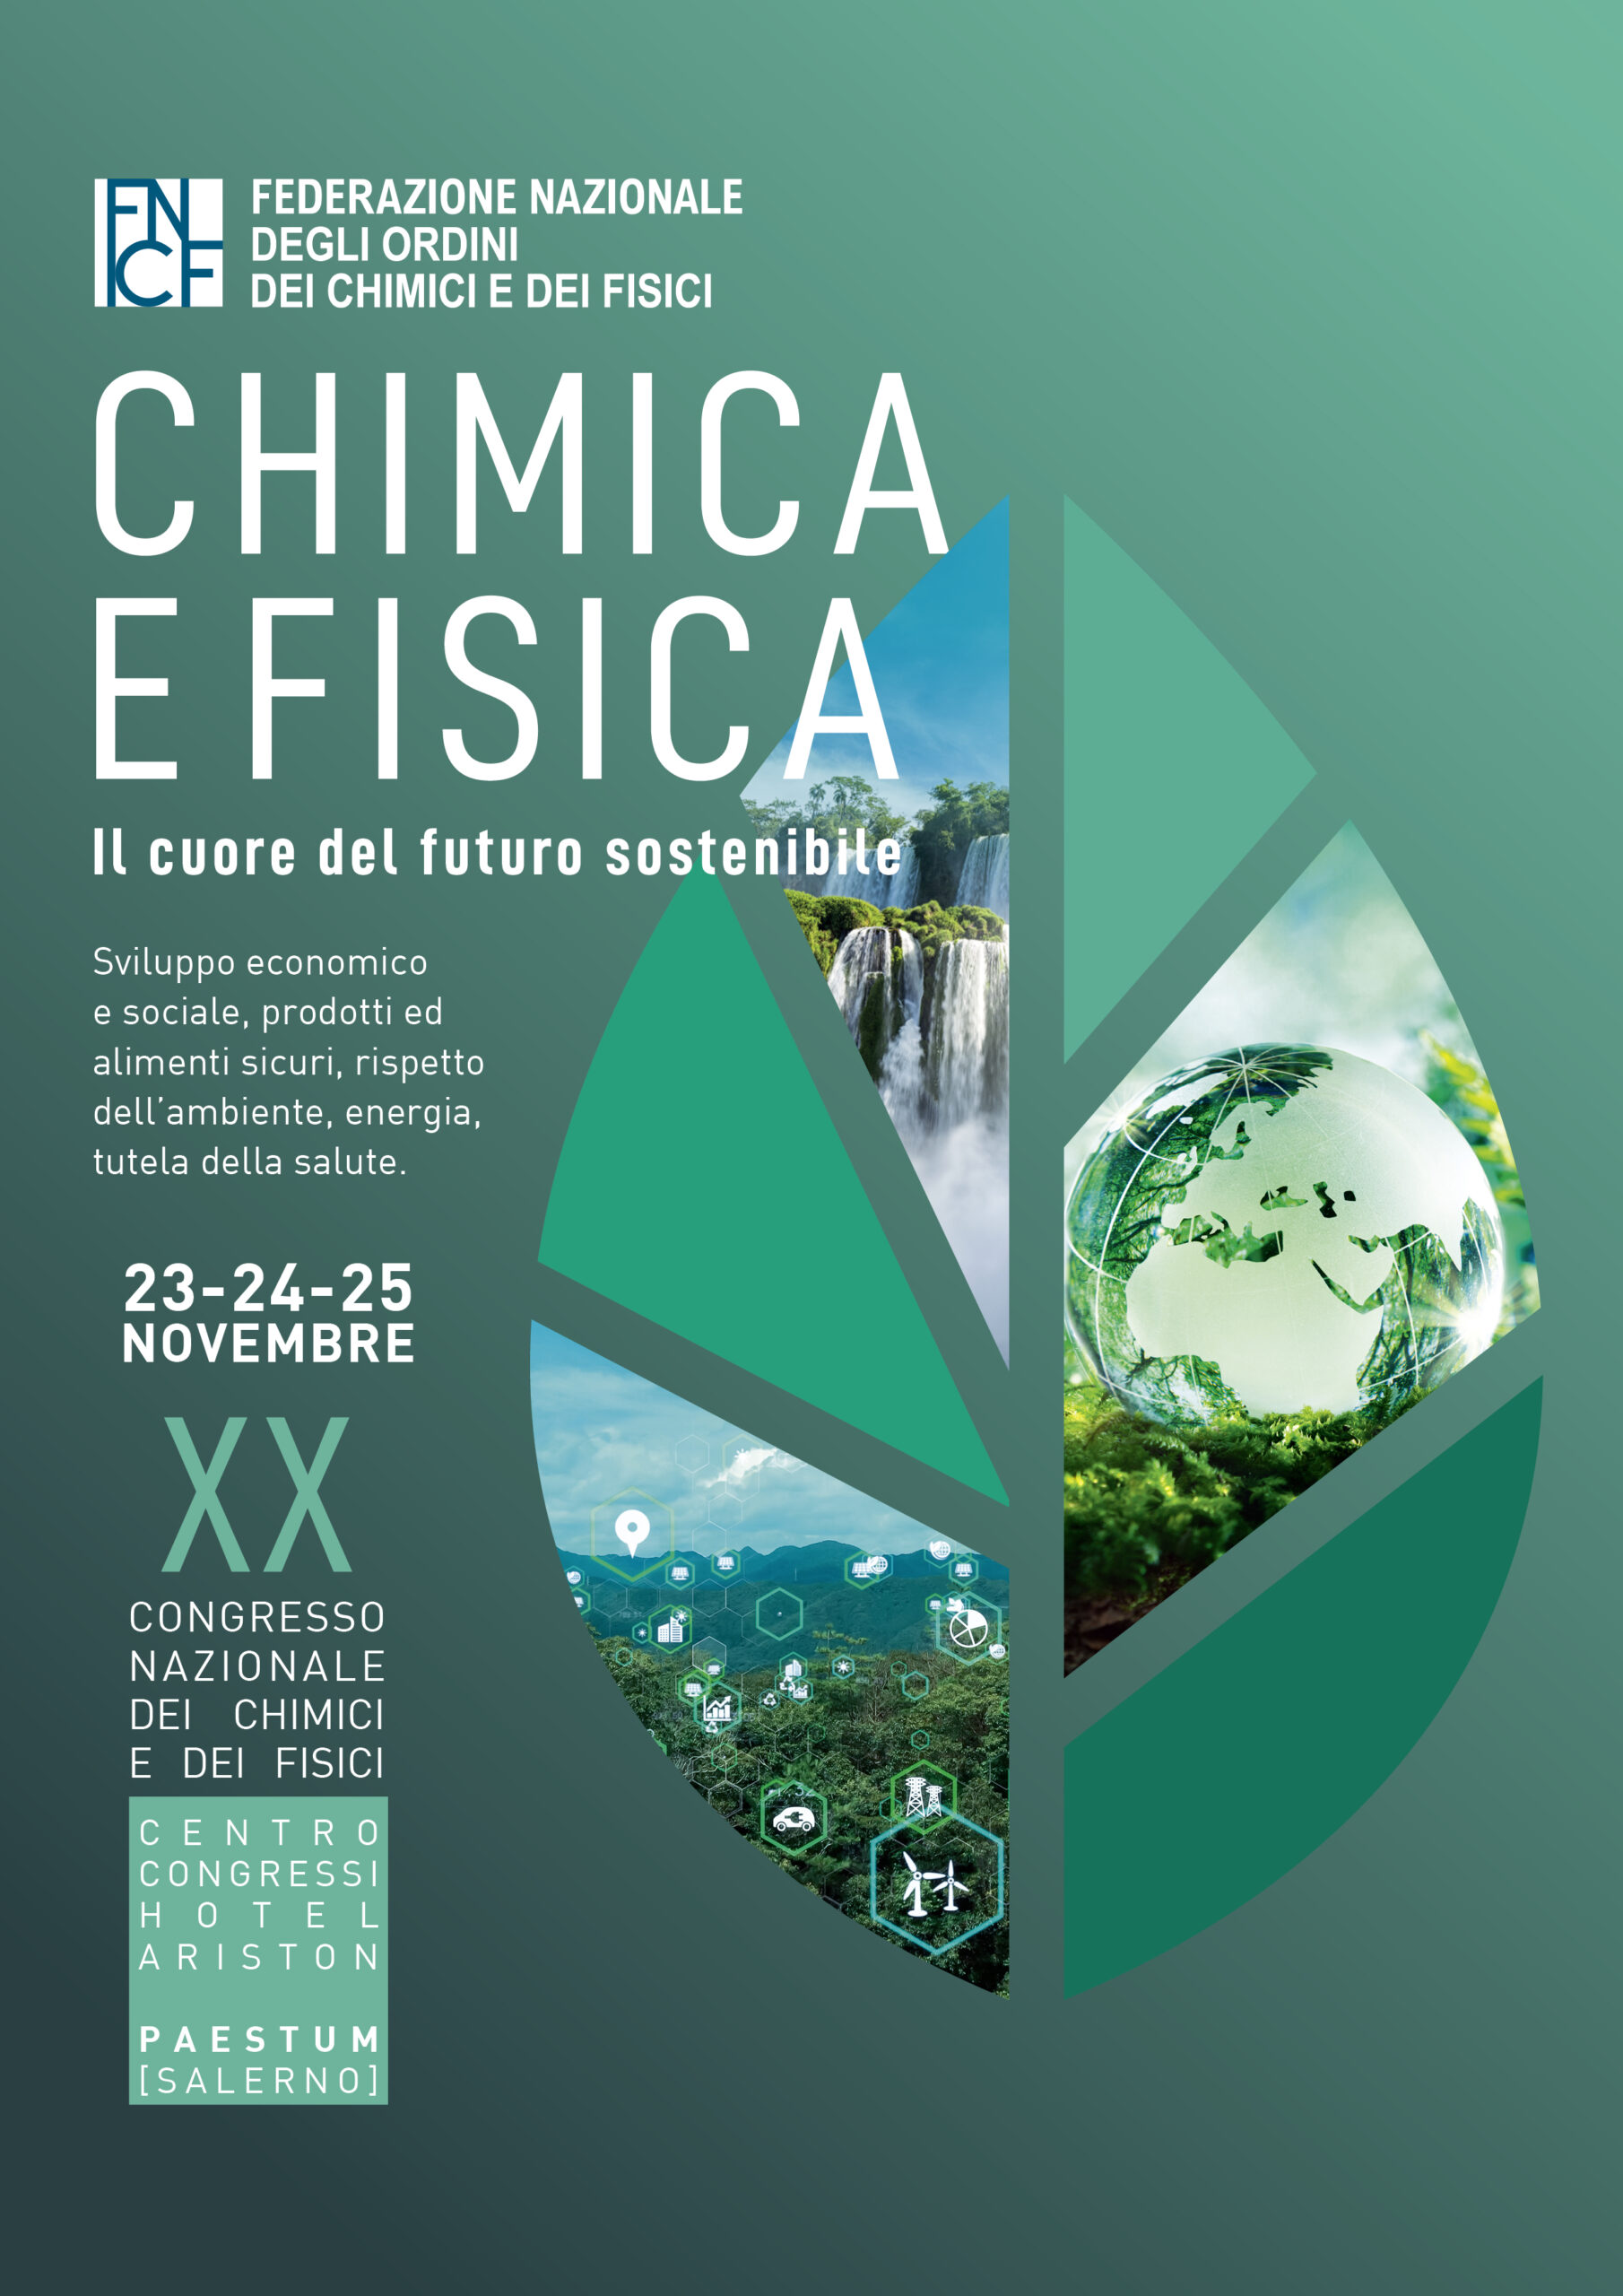 “CHIMICA E FISICA: il cuore del futuro sostenibile”, dal 23 al 25 novembre 2023 a Paestum (SA) il XX Congresso Nazionale dei Chimici e dei Fisici